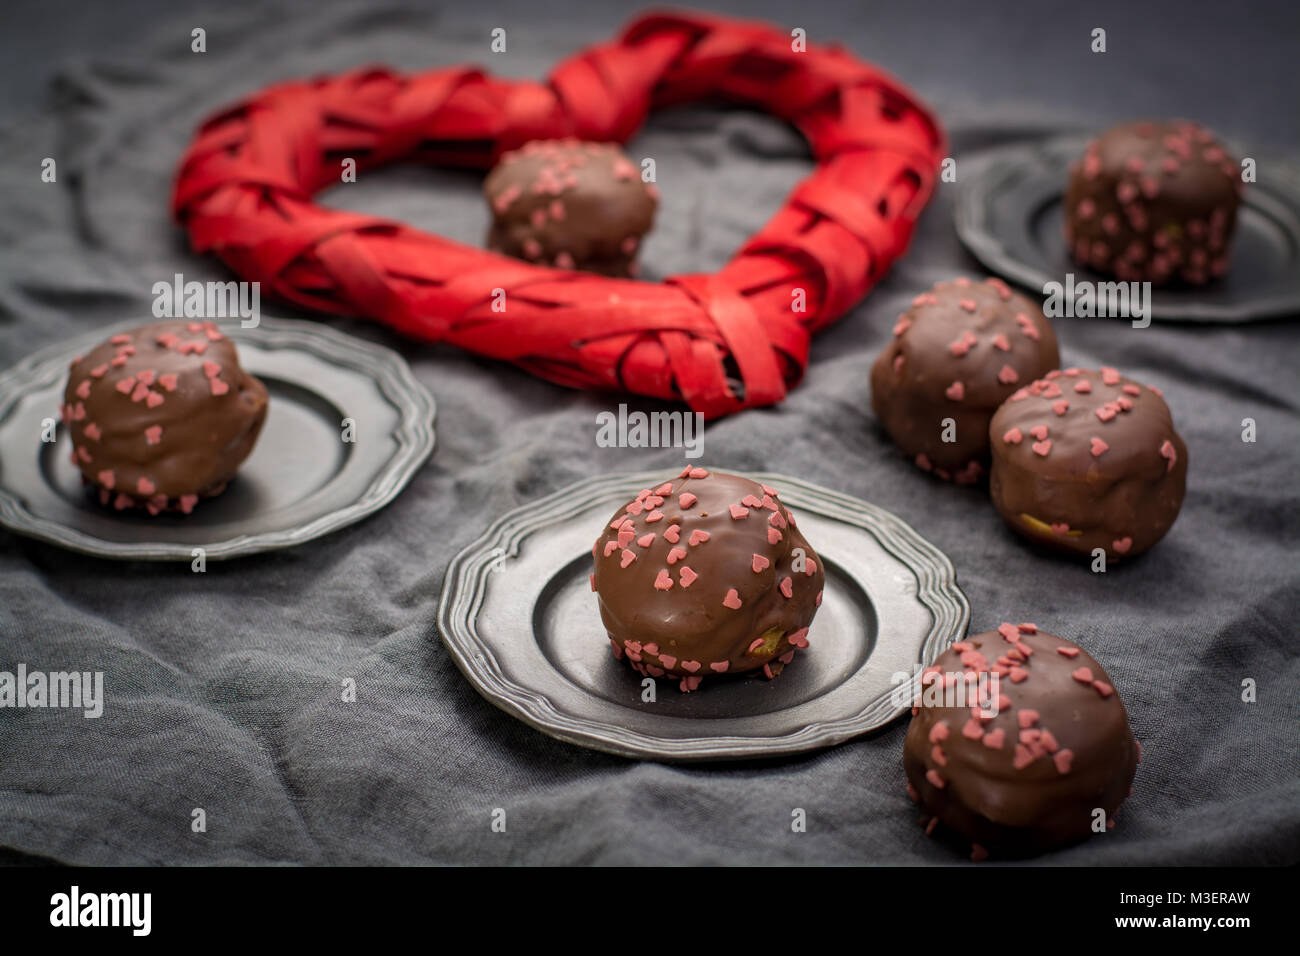 Valentine's Day concept, profiteroles au chocolat avec des coeurs roses, des gâteaux farcis, romantique, événement spécial désert sucré avec coeur rouge Banque D'Images